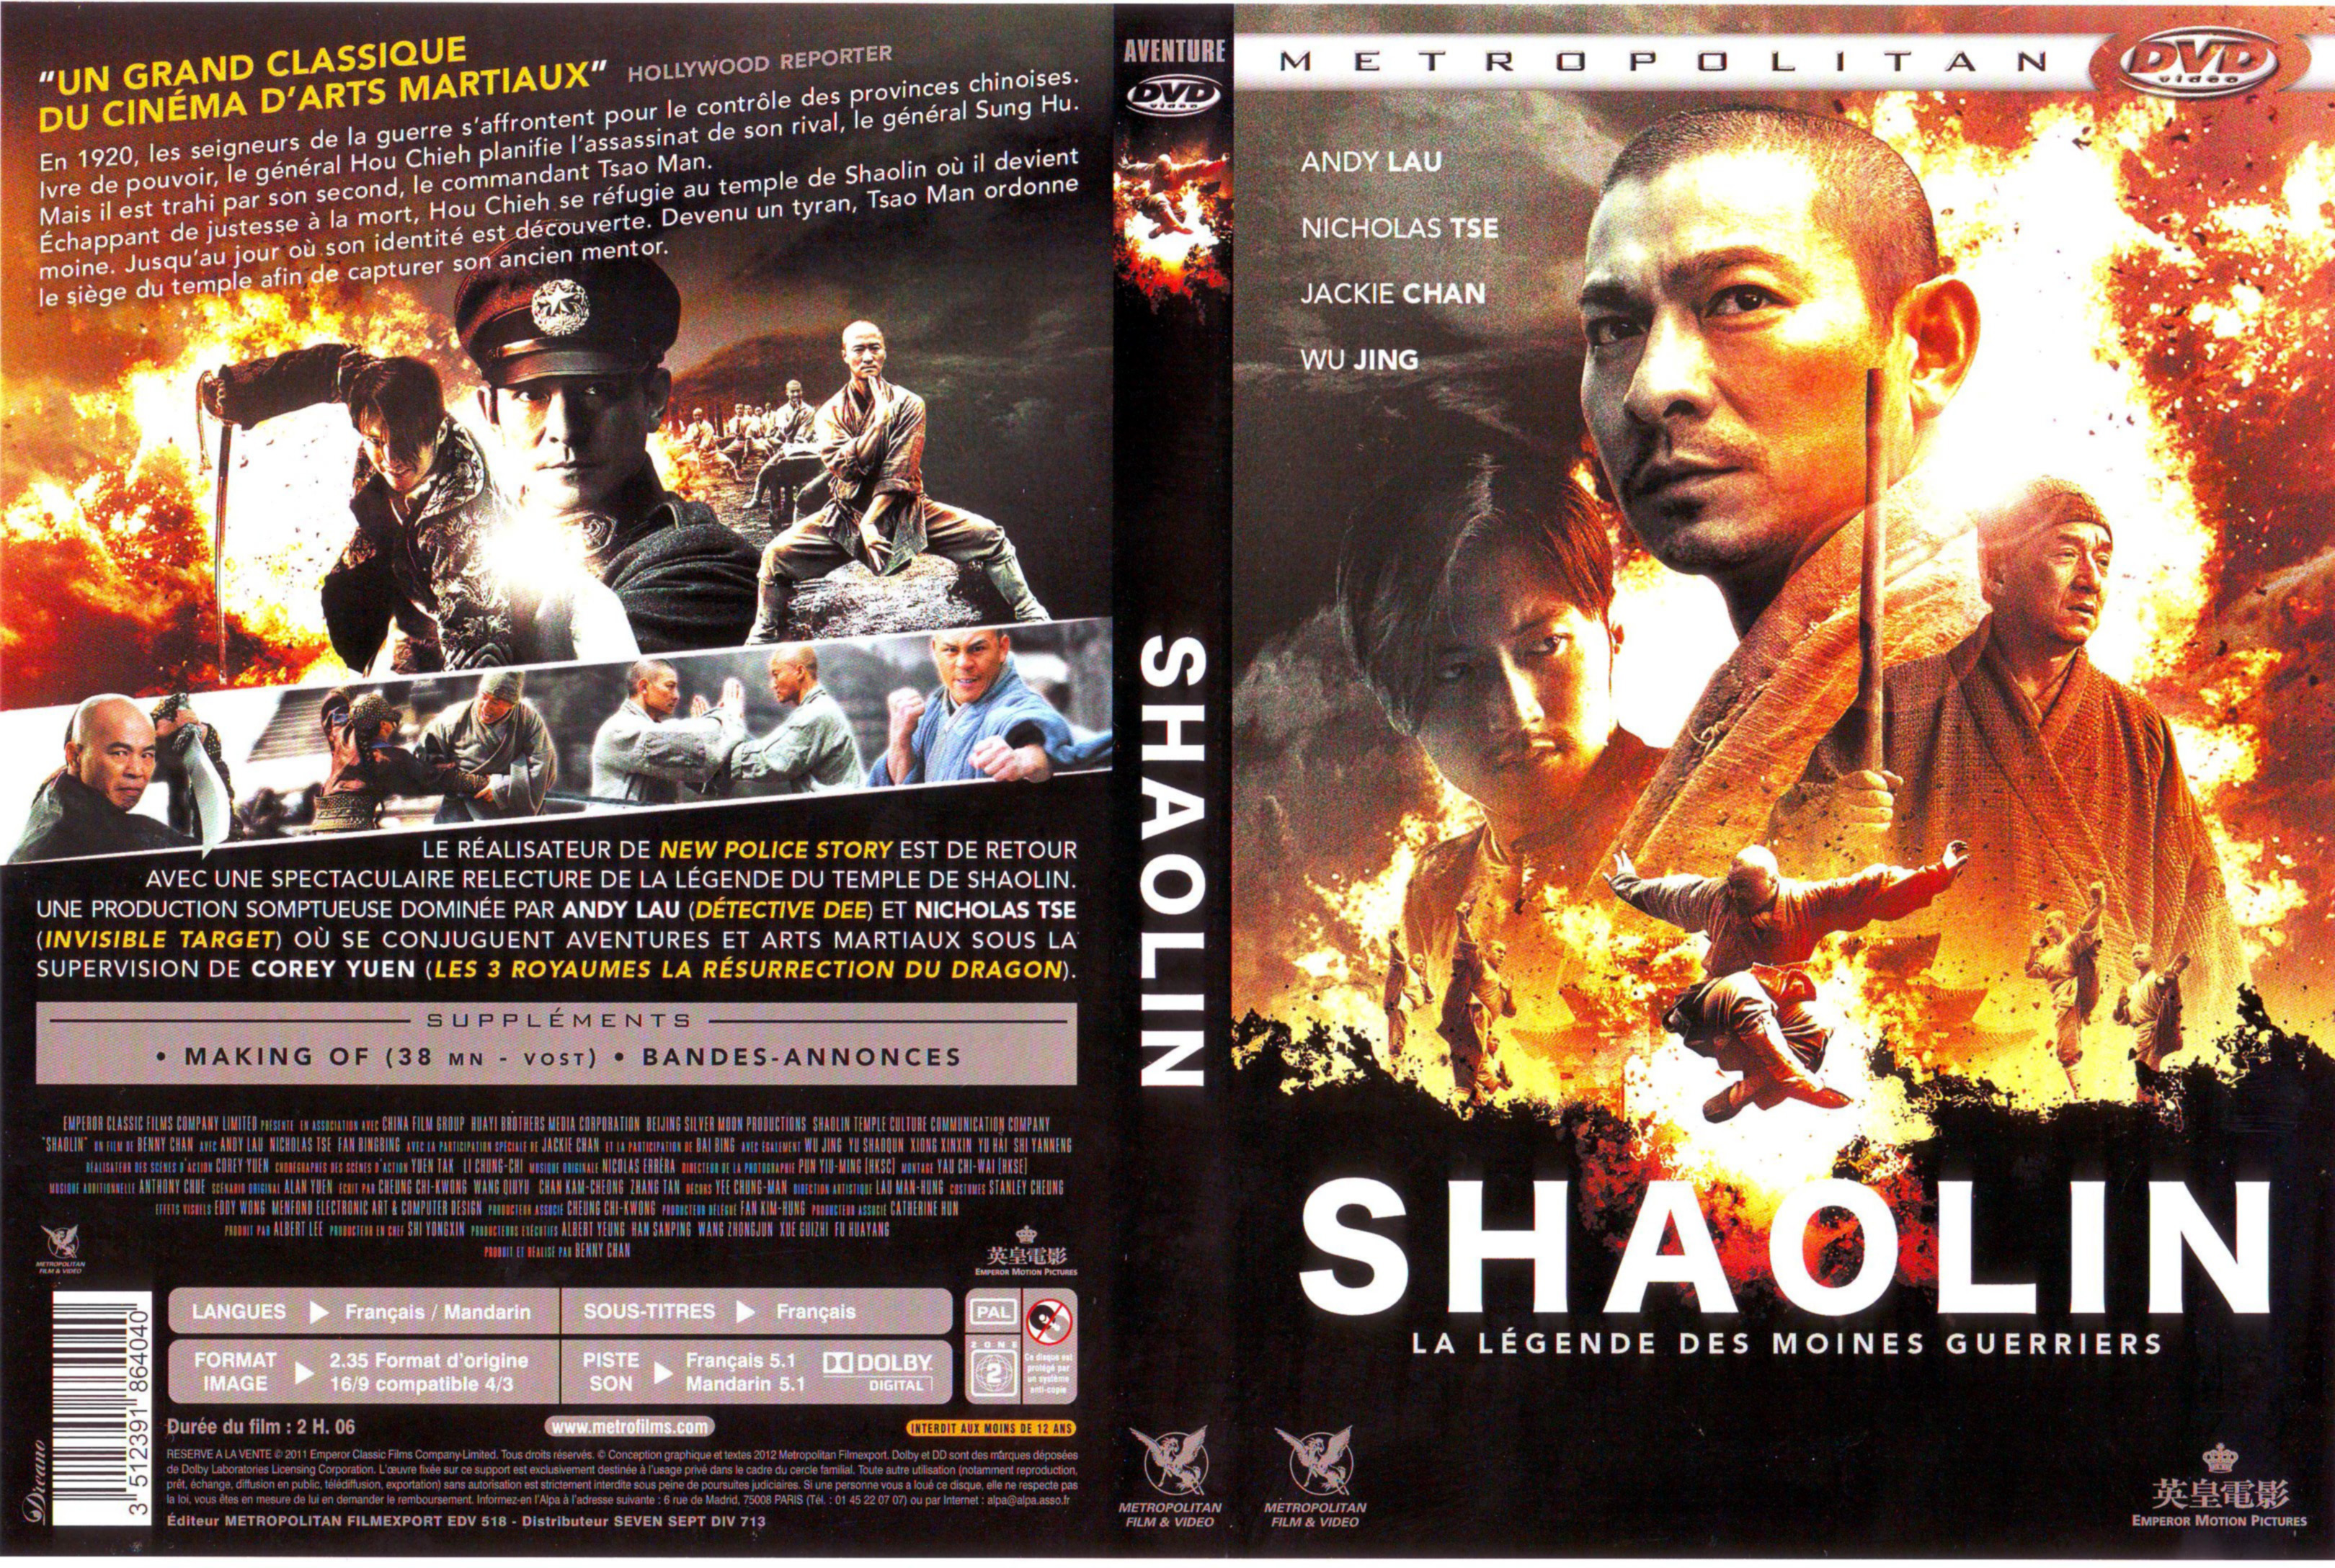 Jaquette DVD Shaolin la lgende des moines guerriers